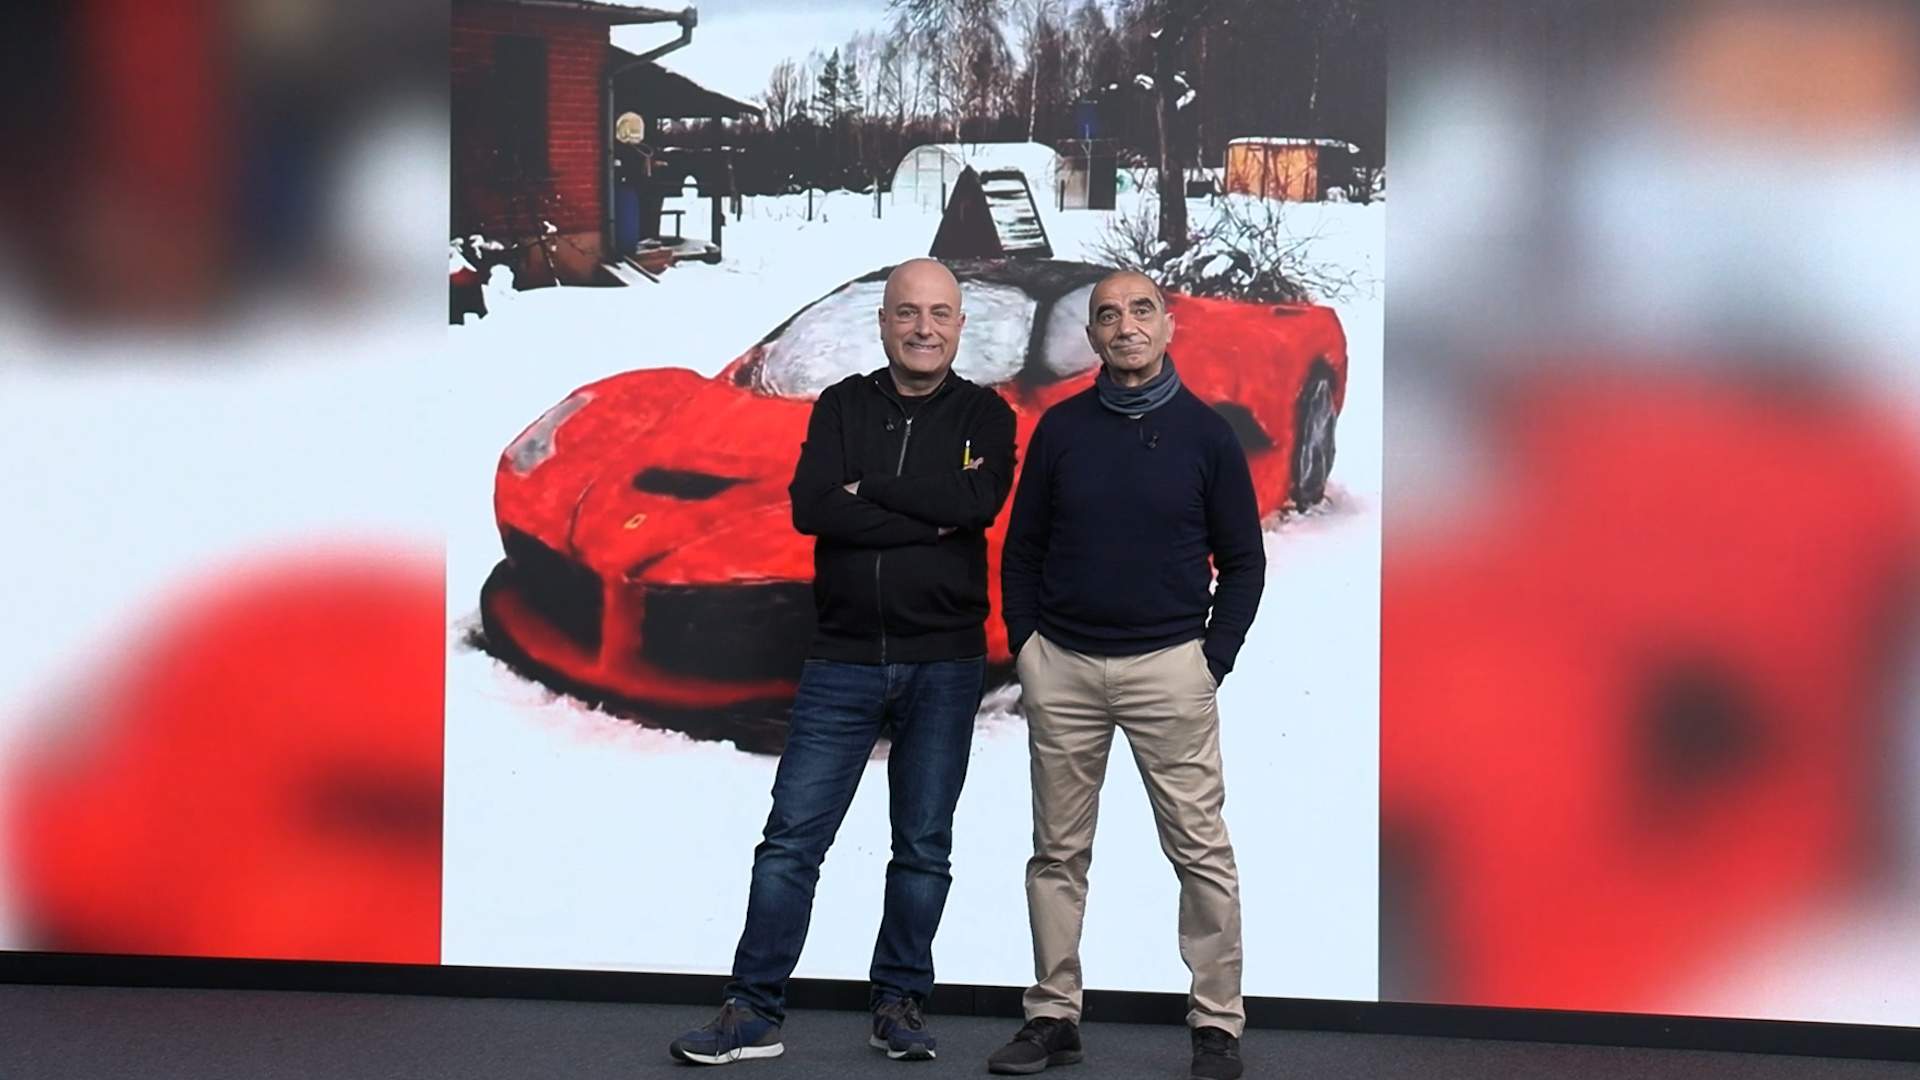 La anécdota de Picó y Freixes: un artista construye un Ferrari de nieve y hielo